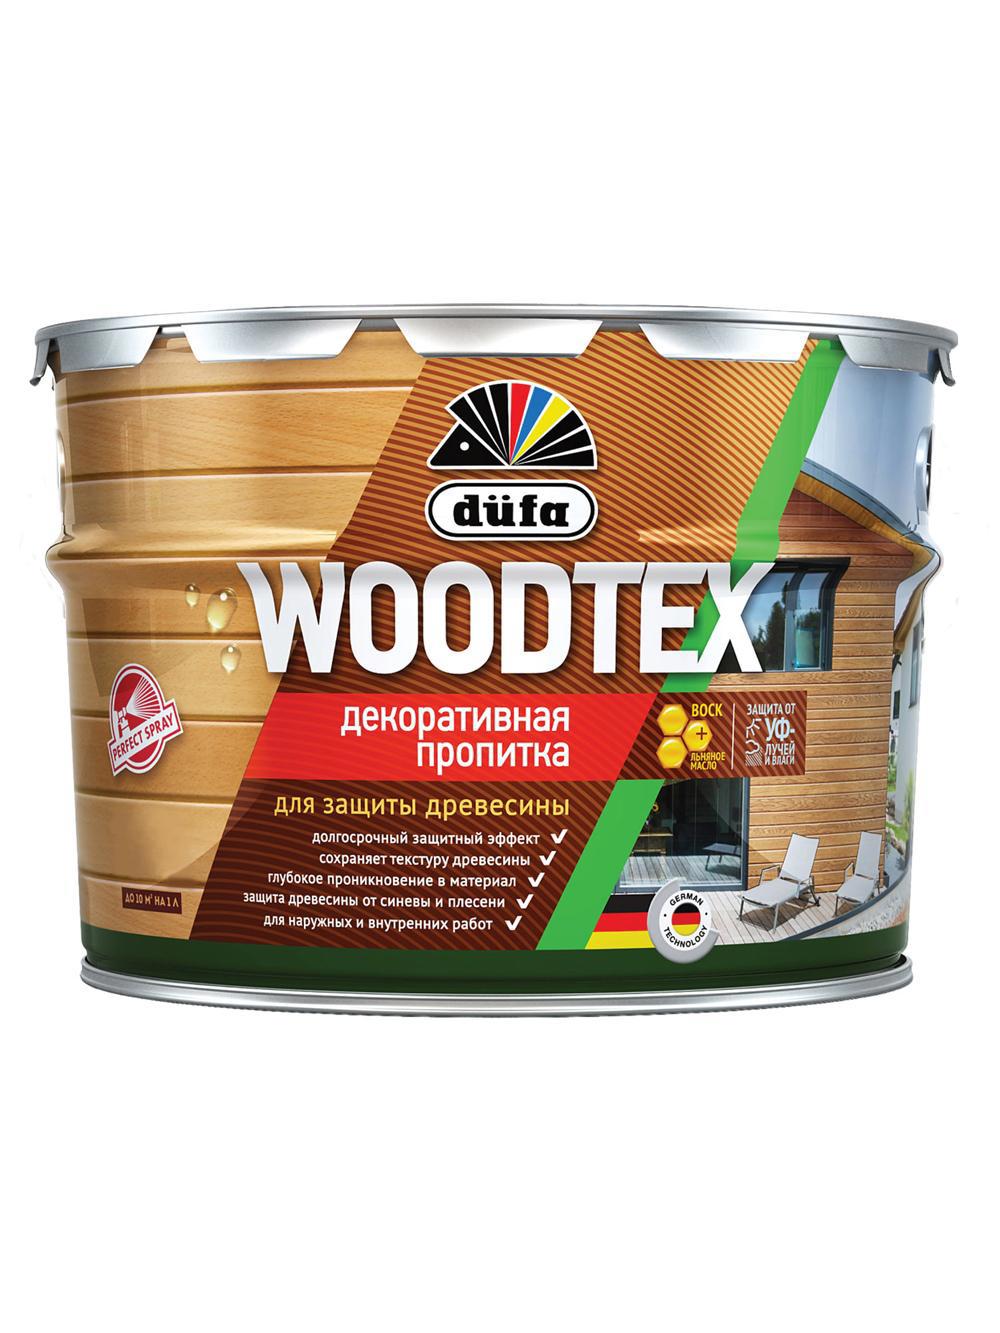 90194566 Пропитка декоративная для защиты древесины алкидная Woodtex рябина 3 л STLM-0128497 DUFA